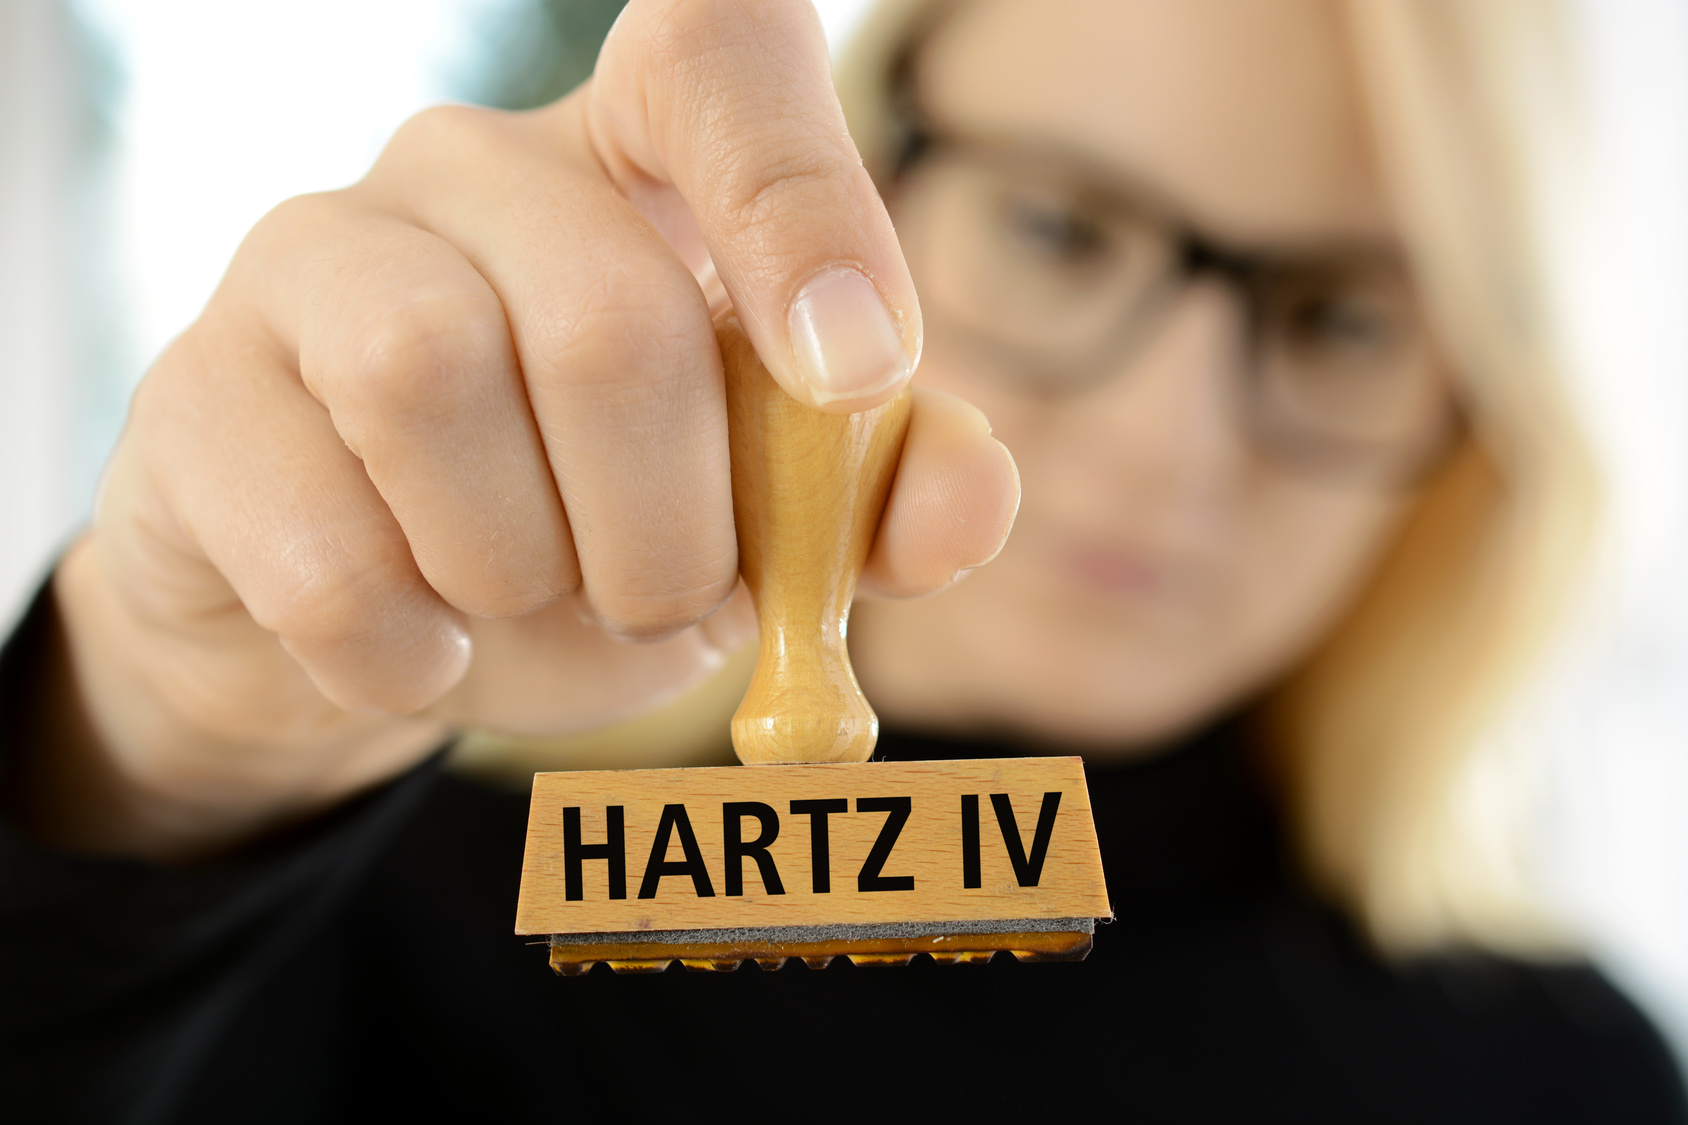 Einstweilige Anordnung bei Ablehnung von Hartz IV So geht’s!